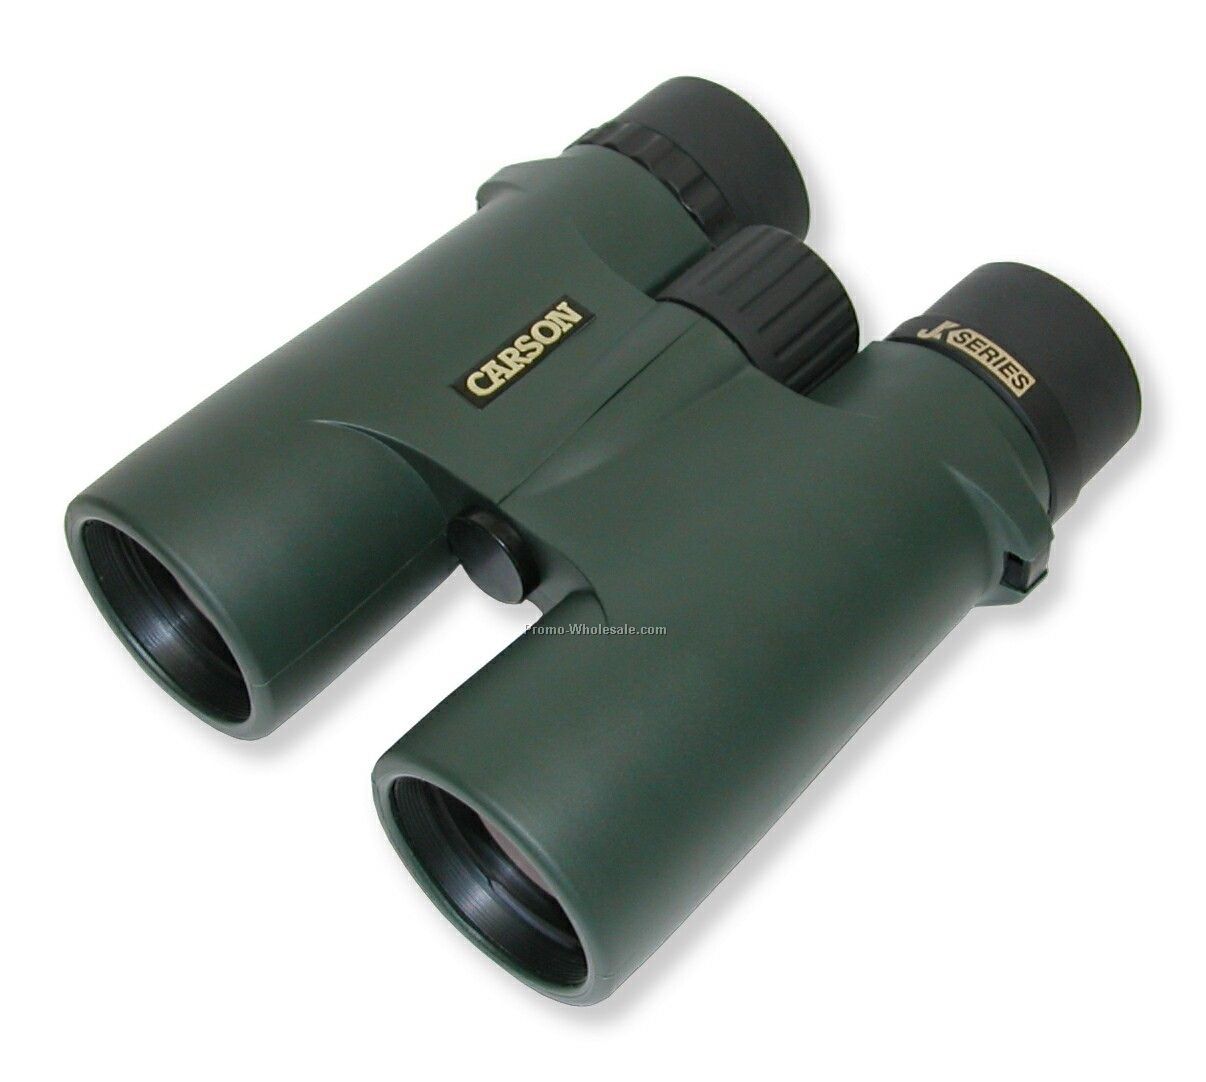 8x42mm Jk- Series Full Size Binoculars